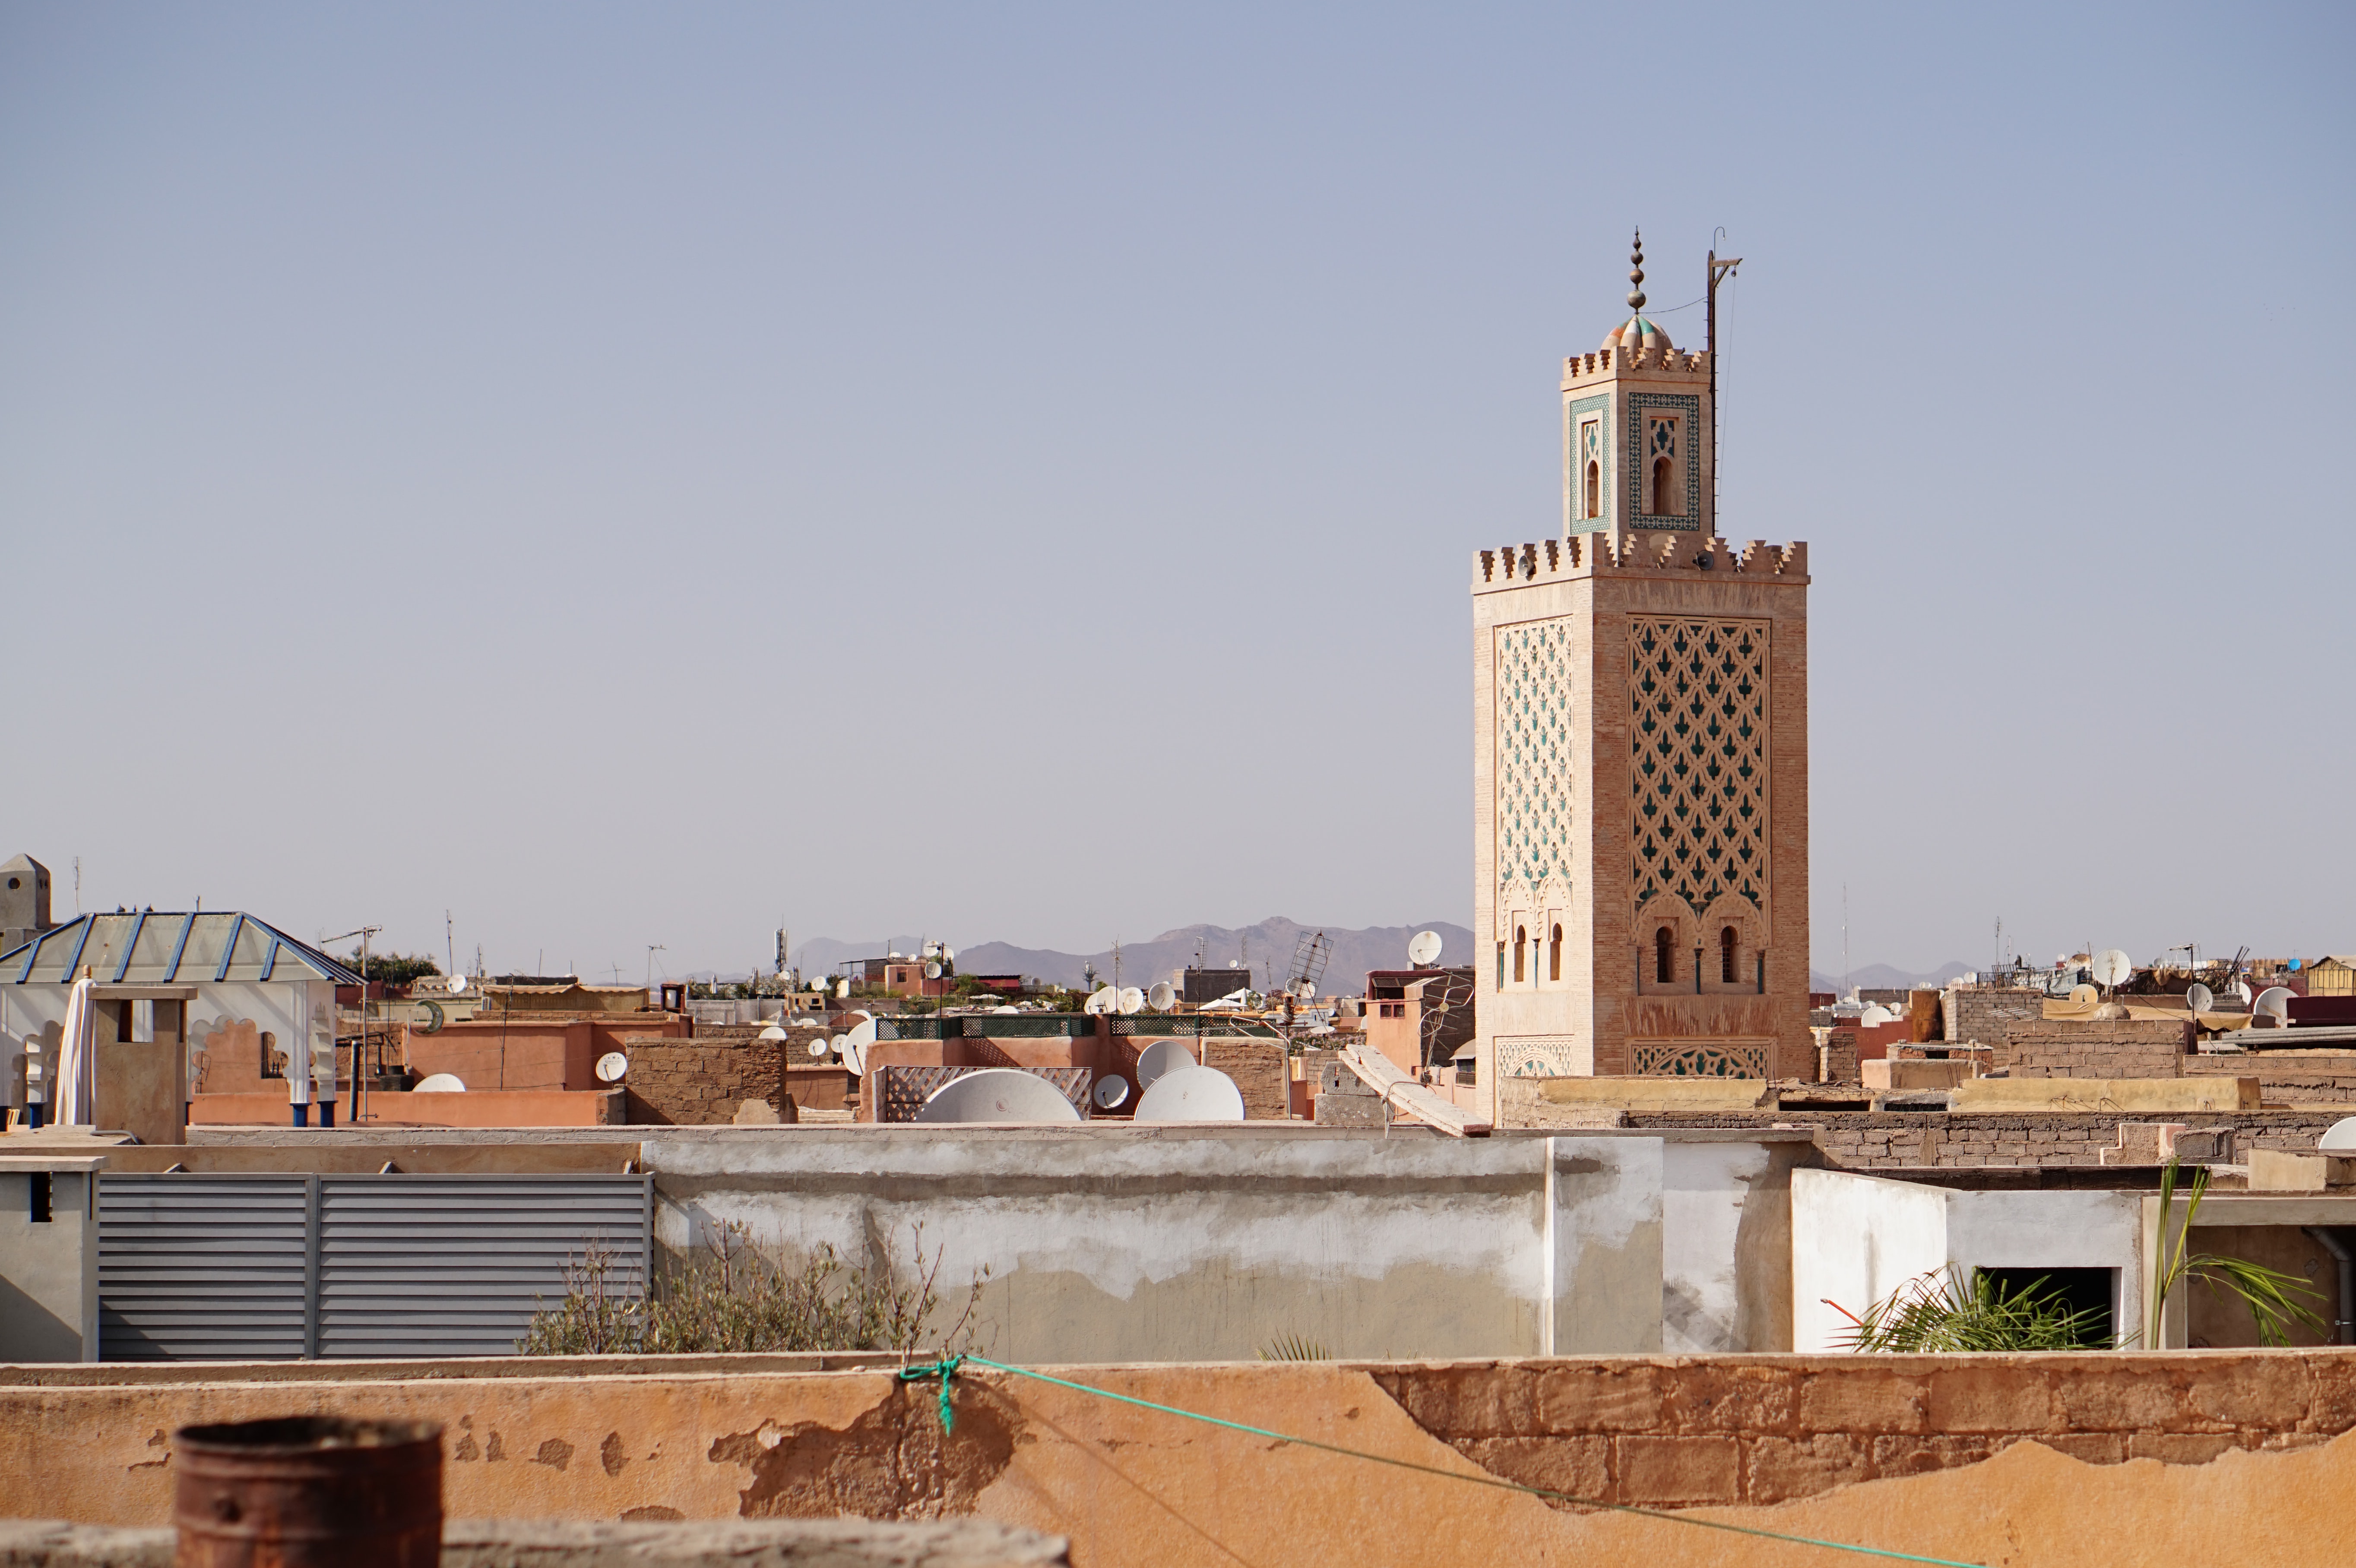 Day 05: Marrakech